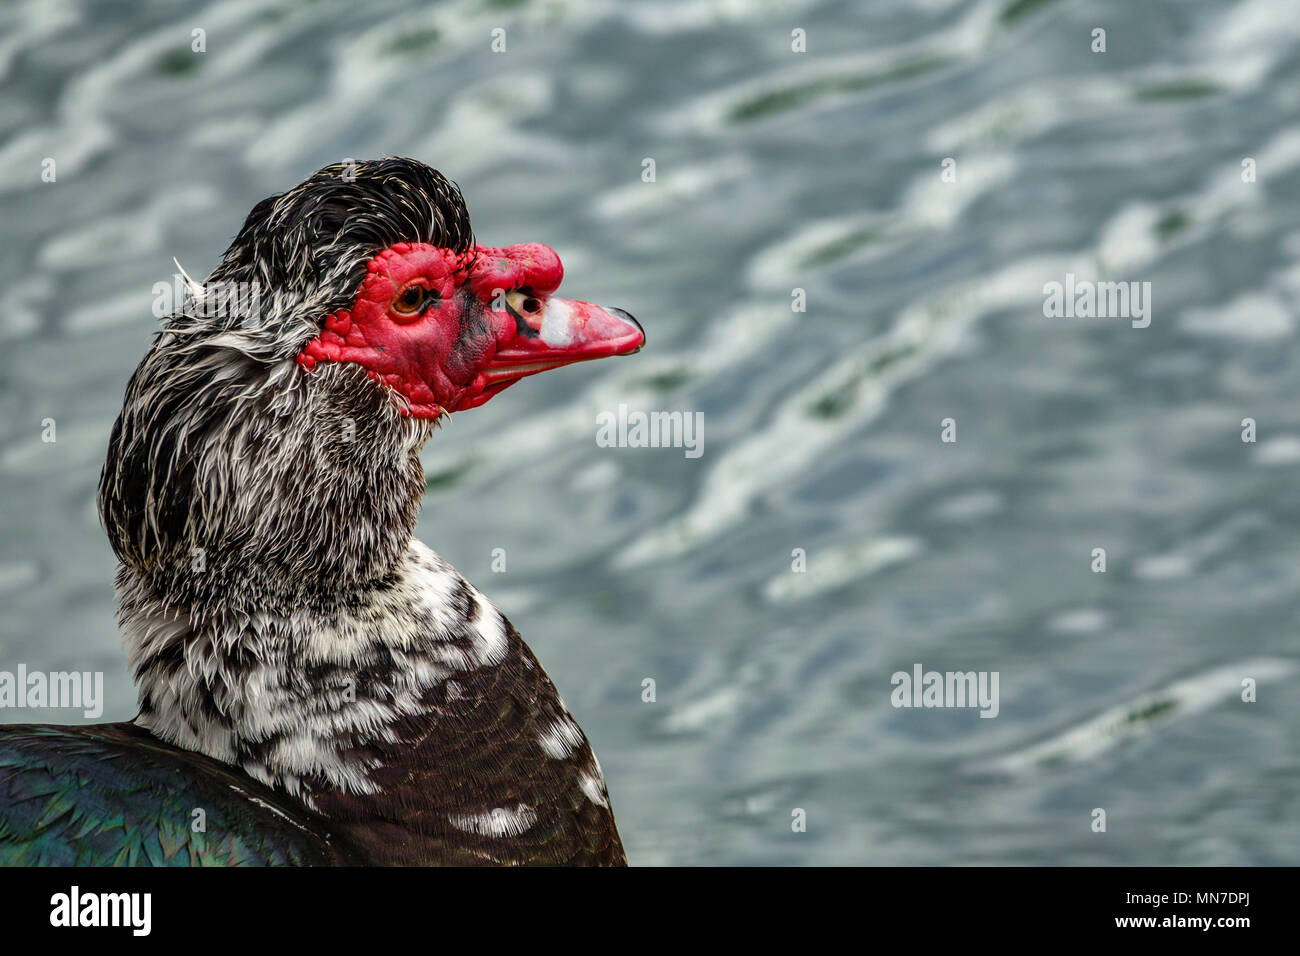 Profil von duck Kopf mit rotem Schnabel Stockfoto